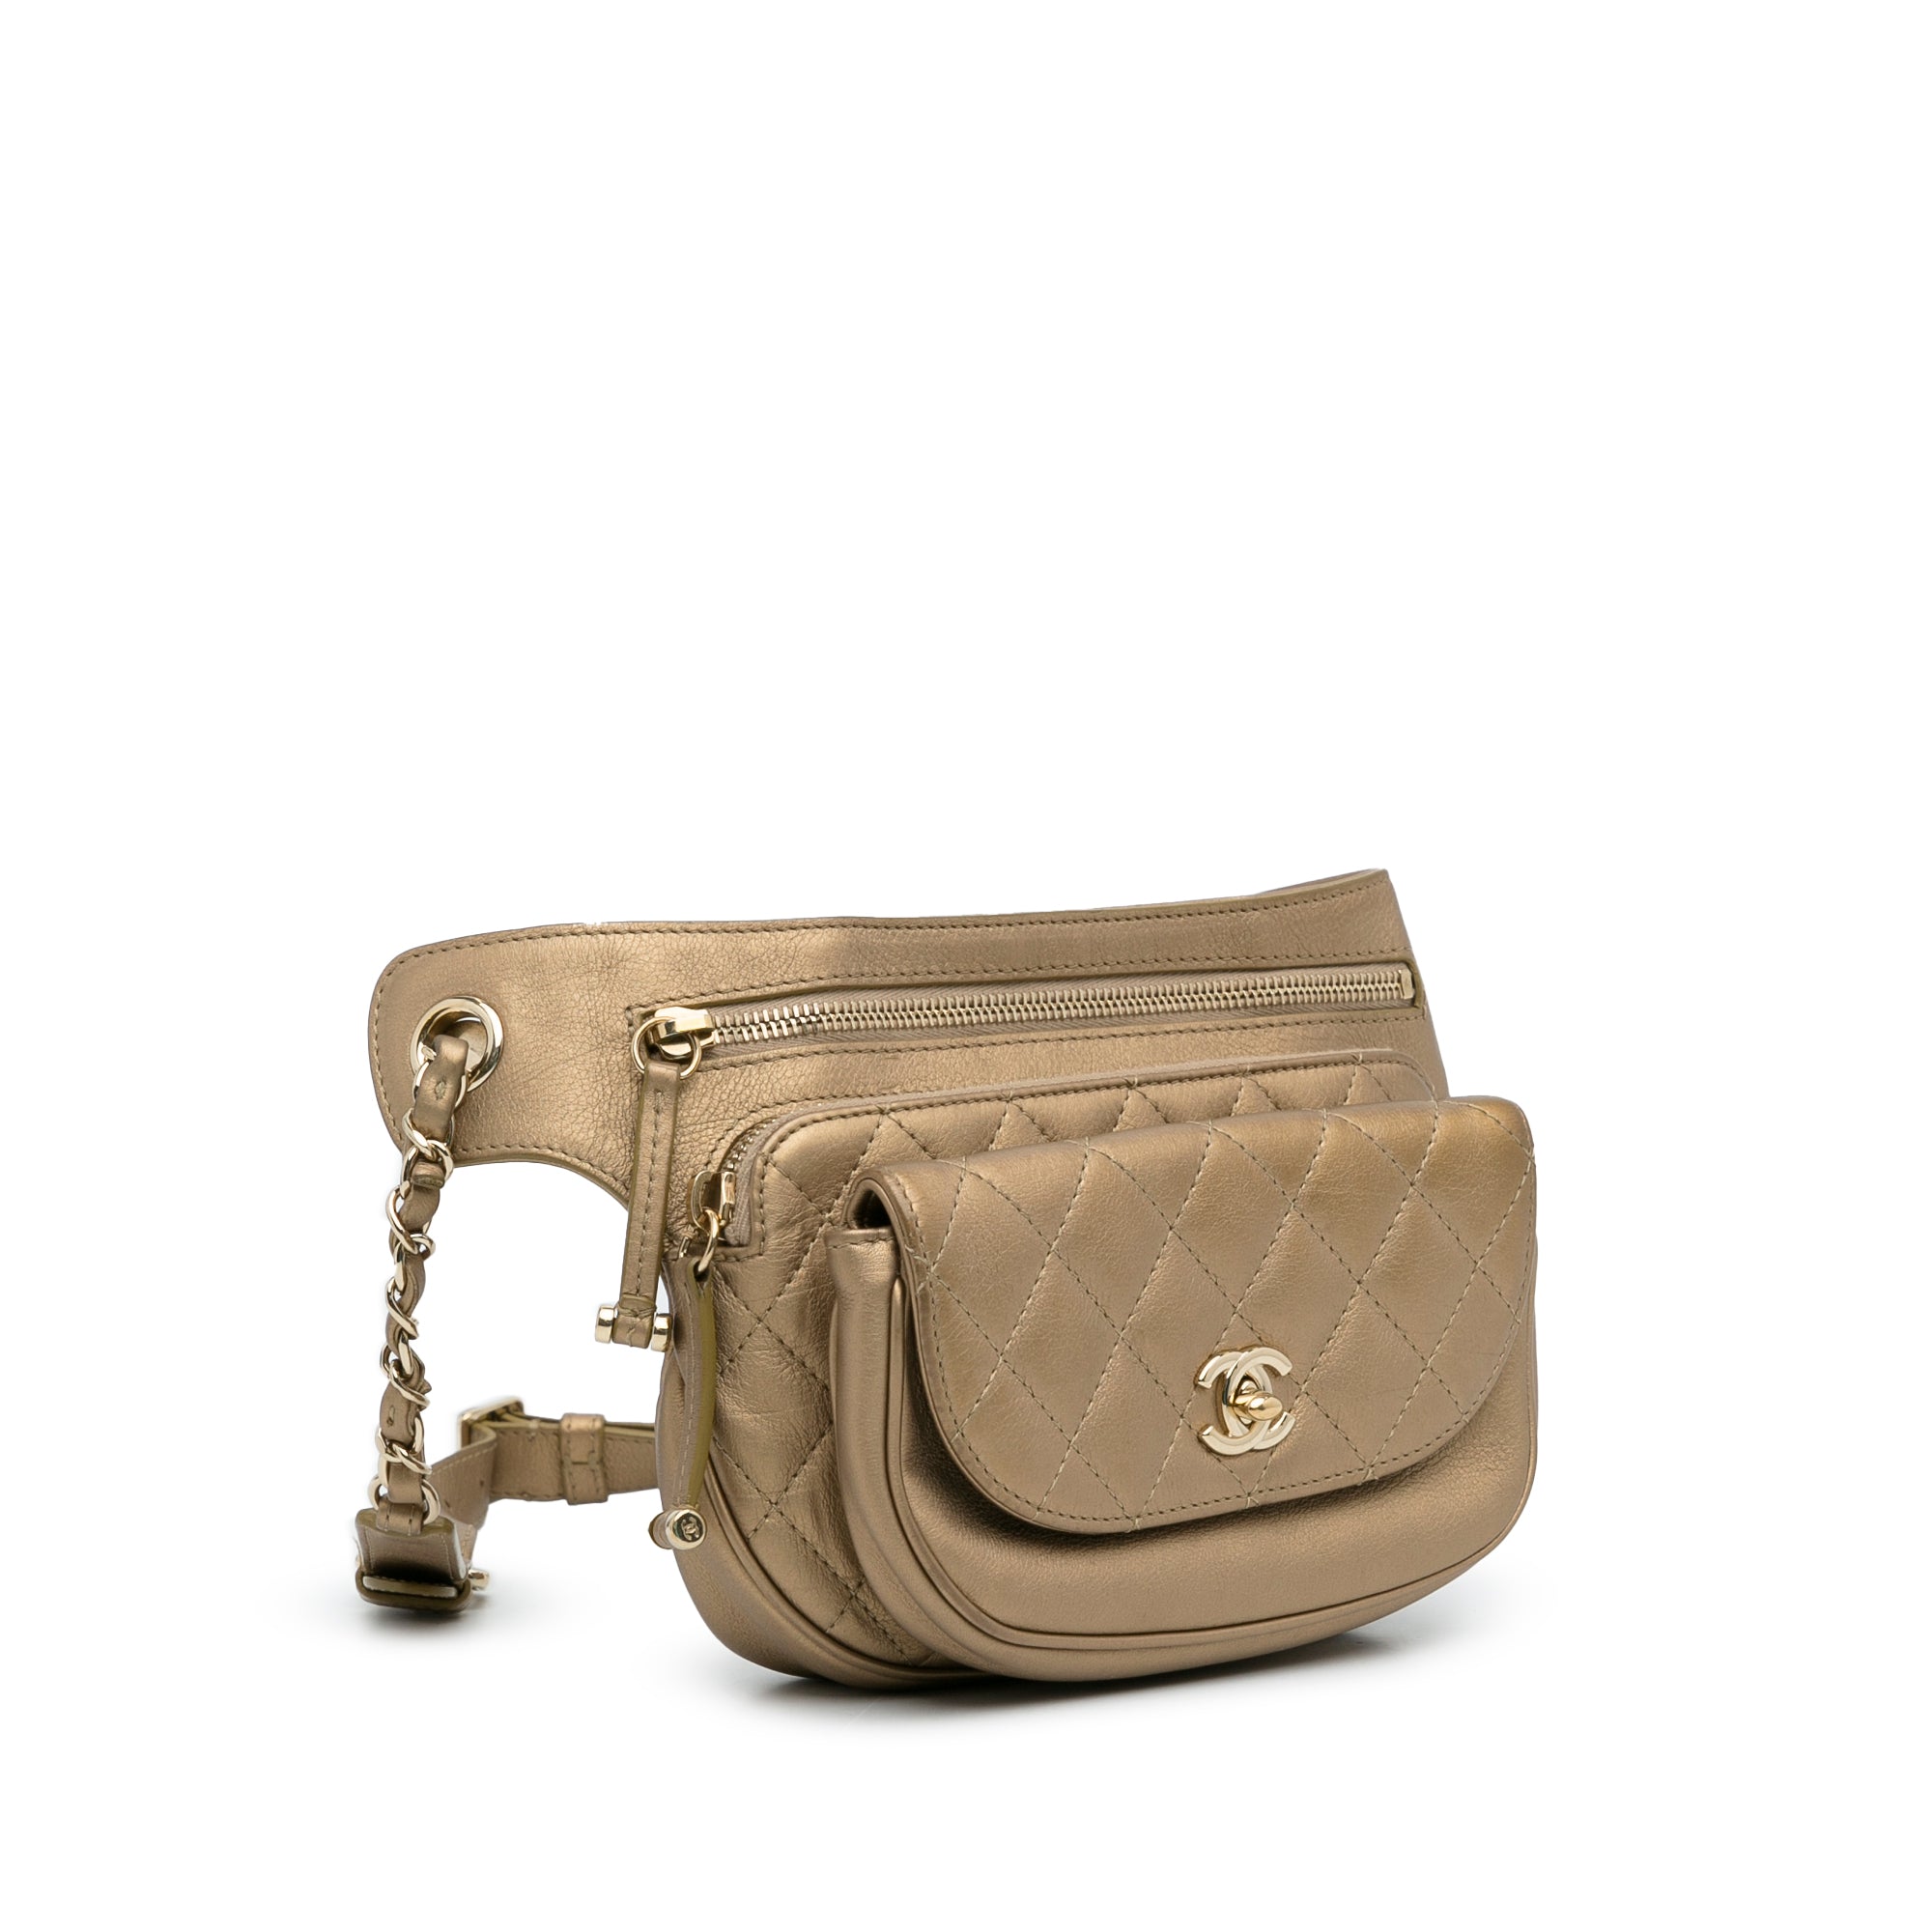 Chanel Belt Bag Brown Leather